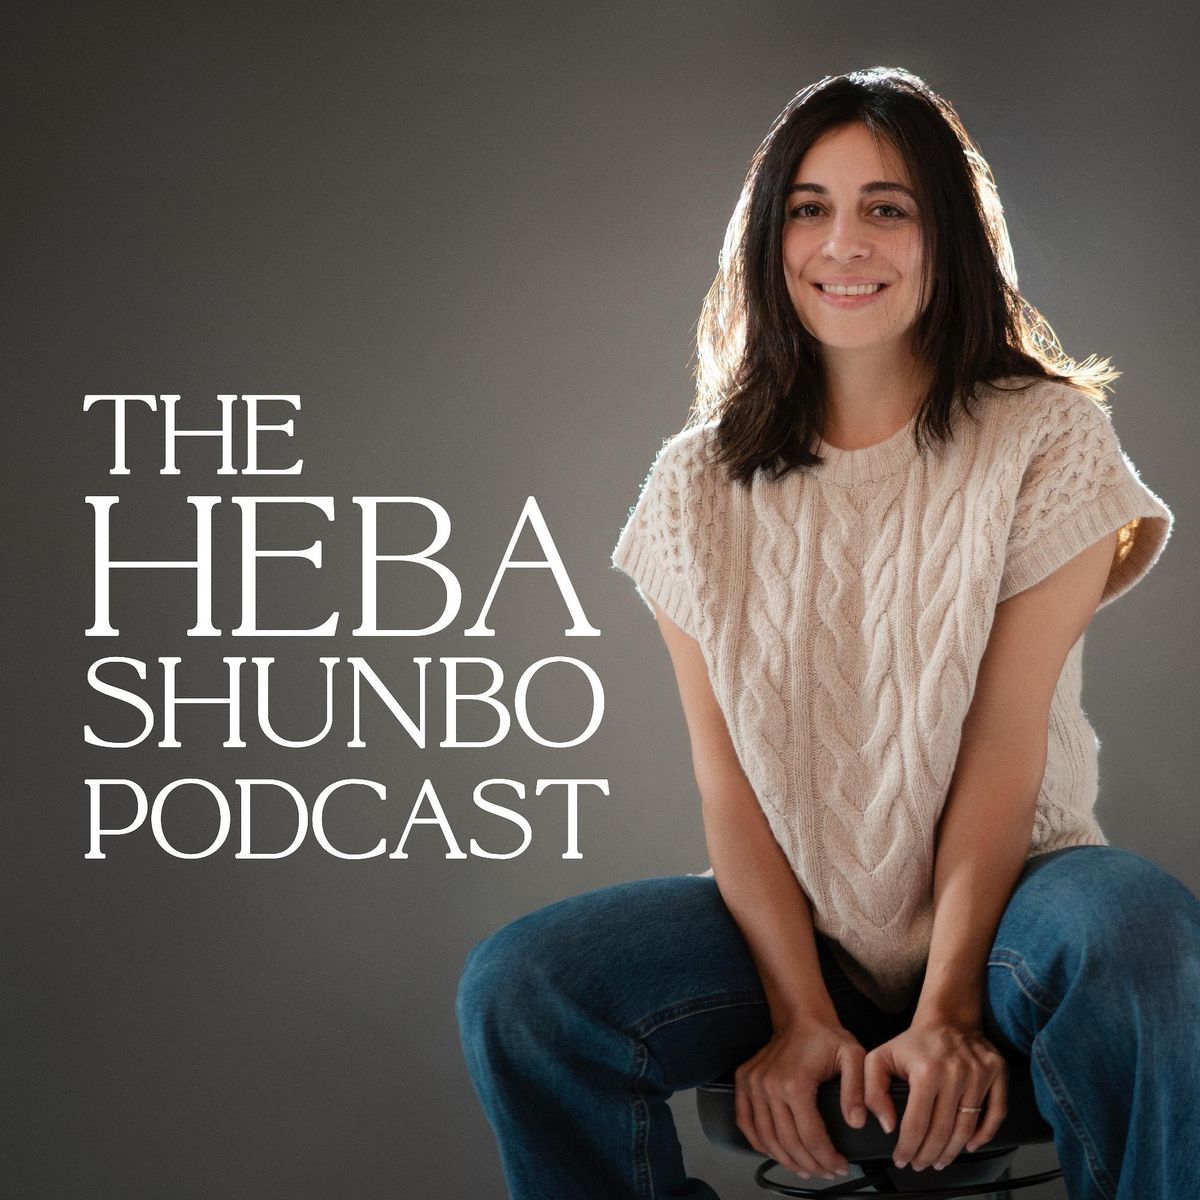 The Heba Shunbo Podcast